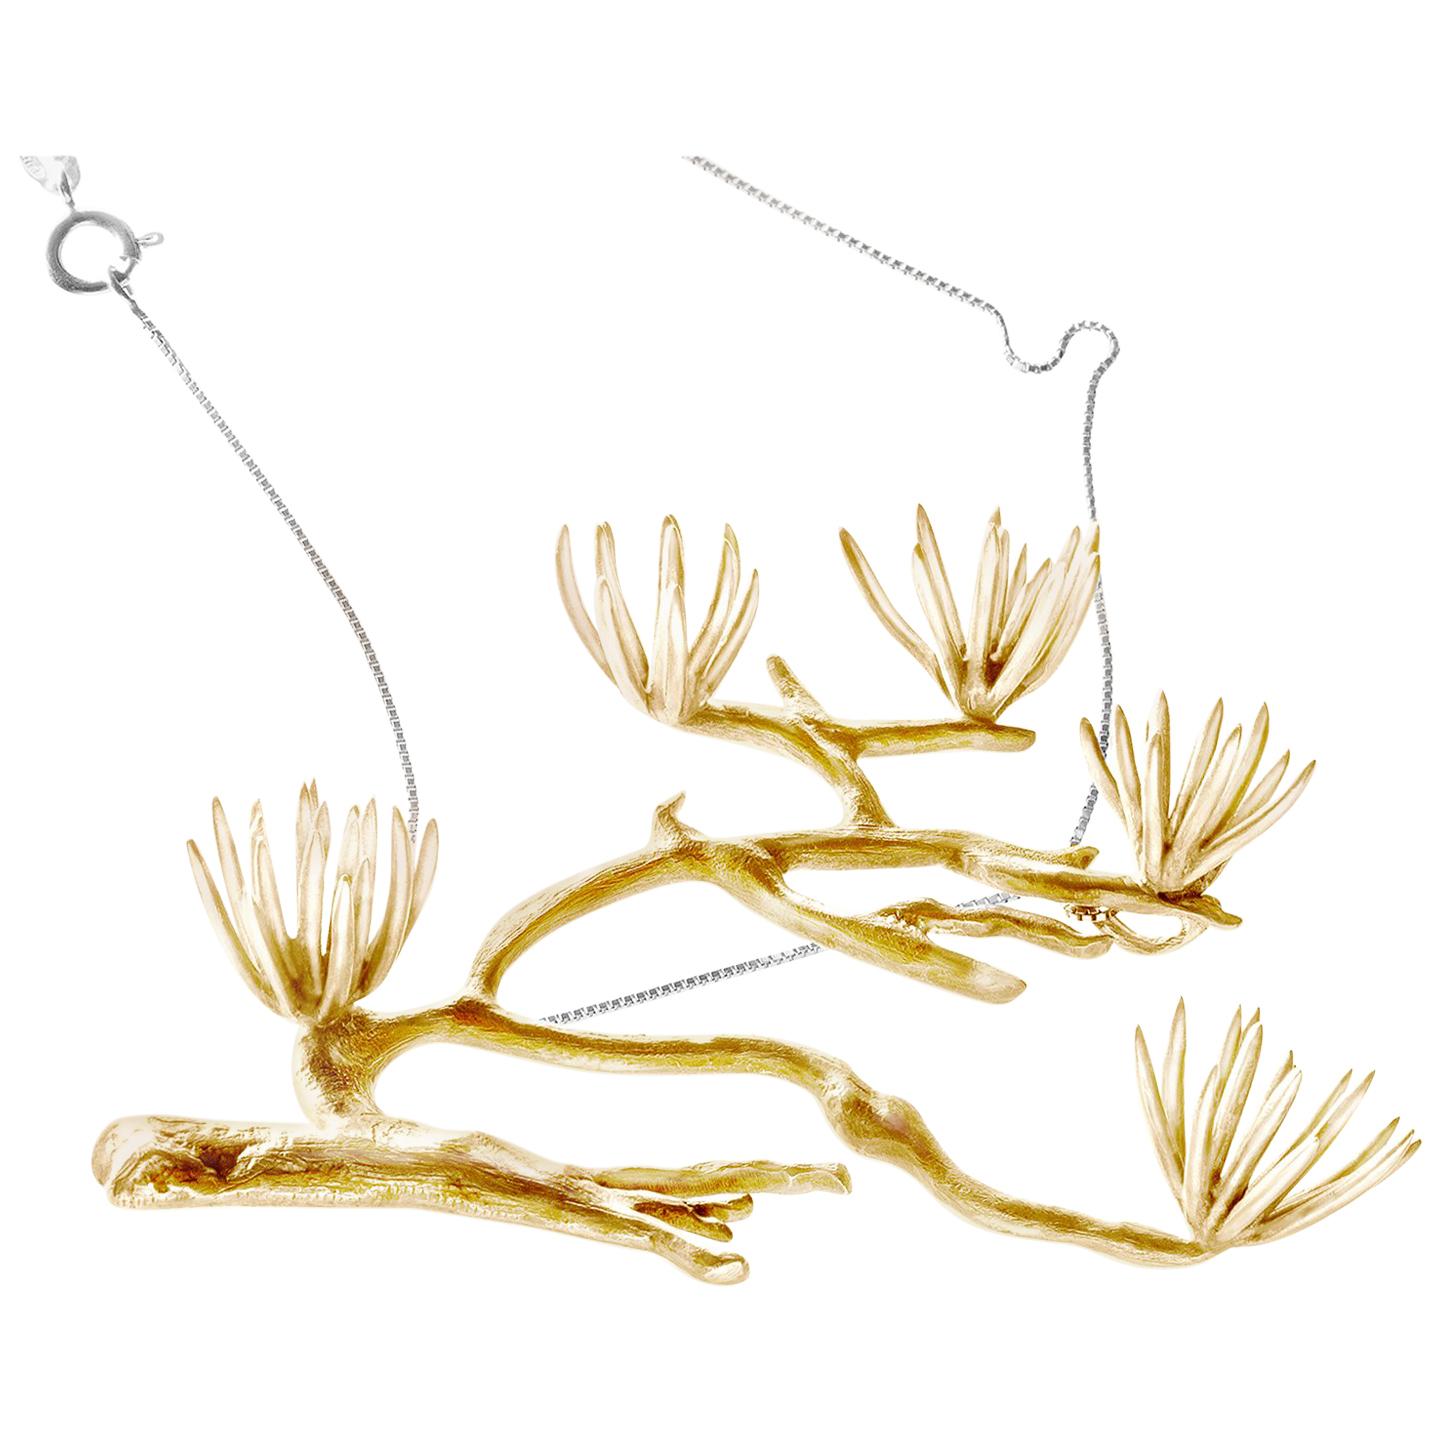 Diese gelbvergoldete Pine-Halskette aus Sterlingsilber wurde in der Vogue UA und im Another Magazine UK vorgestellt. Die Inspiration für die Kiefer-Kollektion leitet sich aus der japanischen und chinesischen Tuschemalerei ab, in der